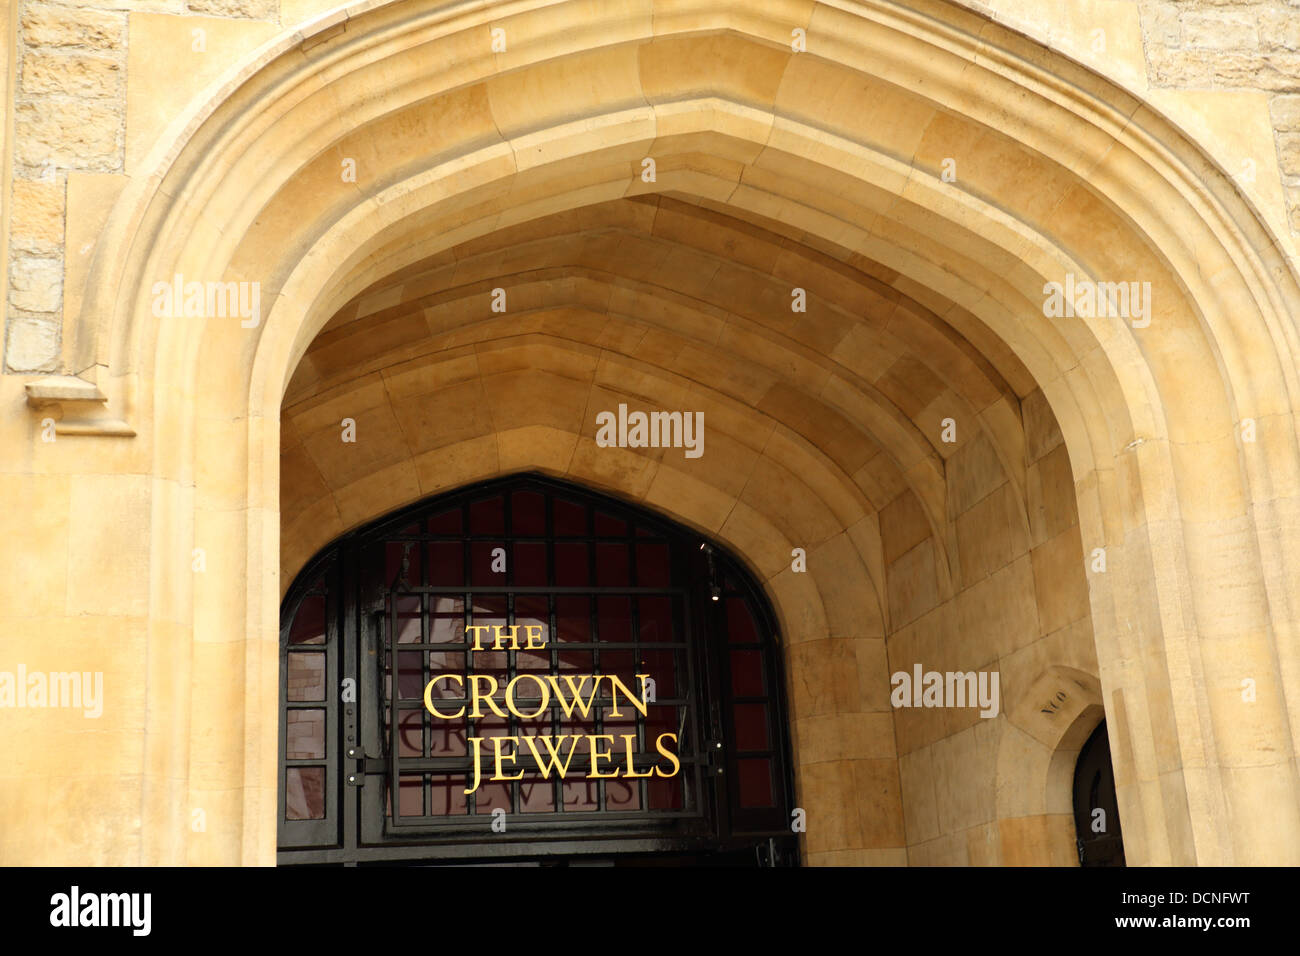 Ingresso a la Jewel House presso la Torre di Londra dove i gioielli della Corona sono sul display, Londra Inghilterra REGNO UNITO Foto Stock